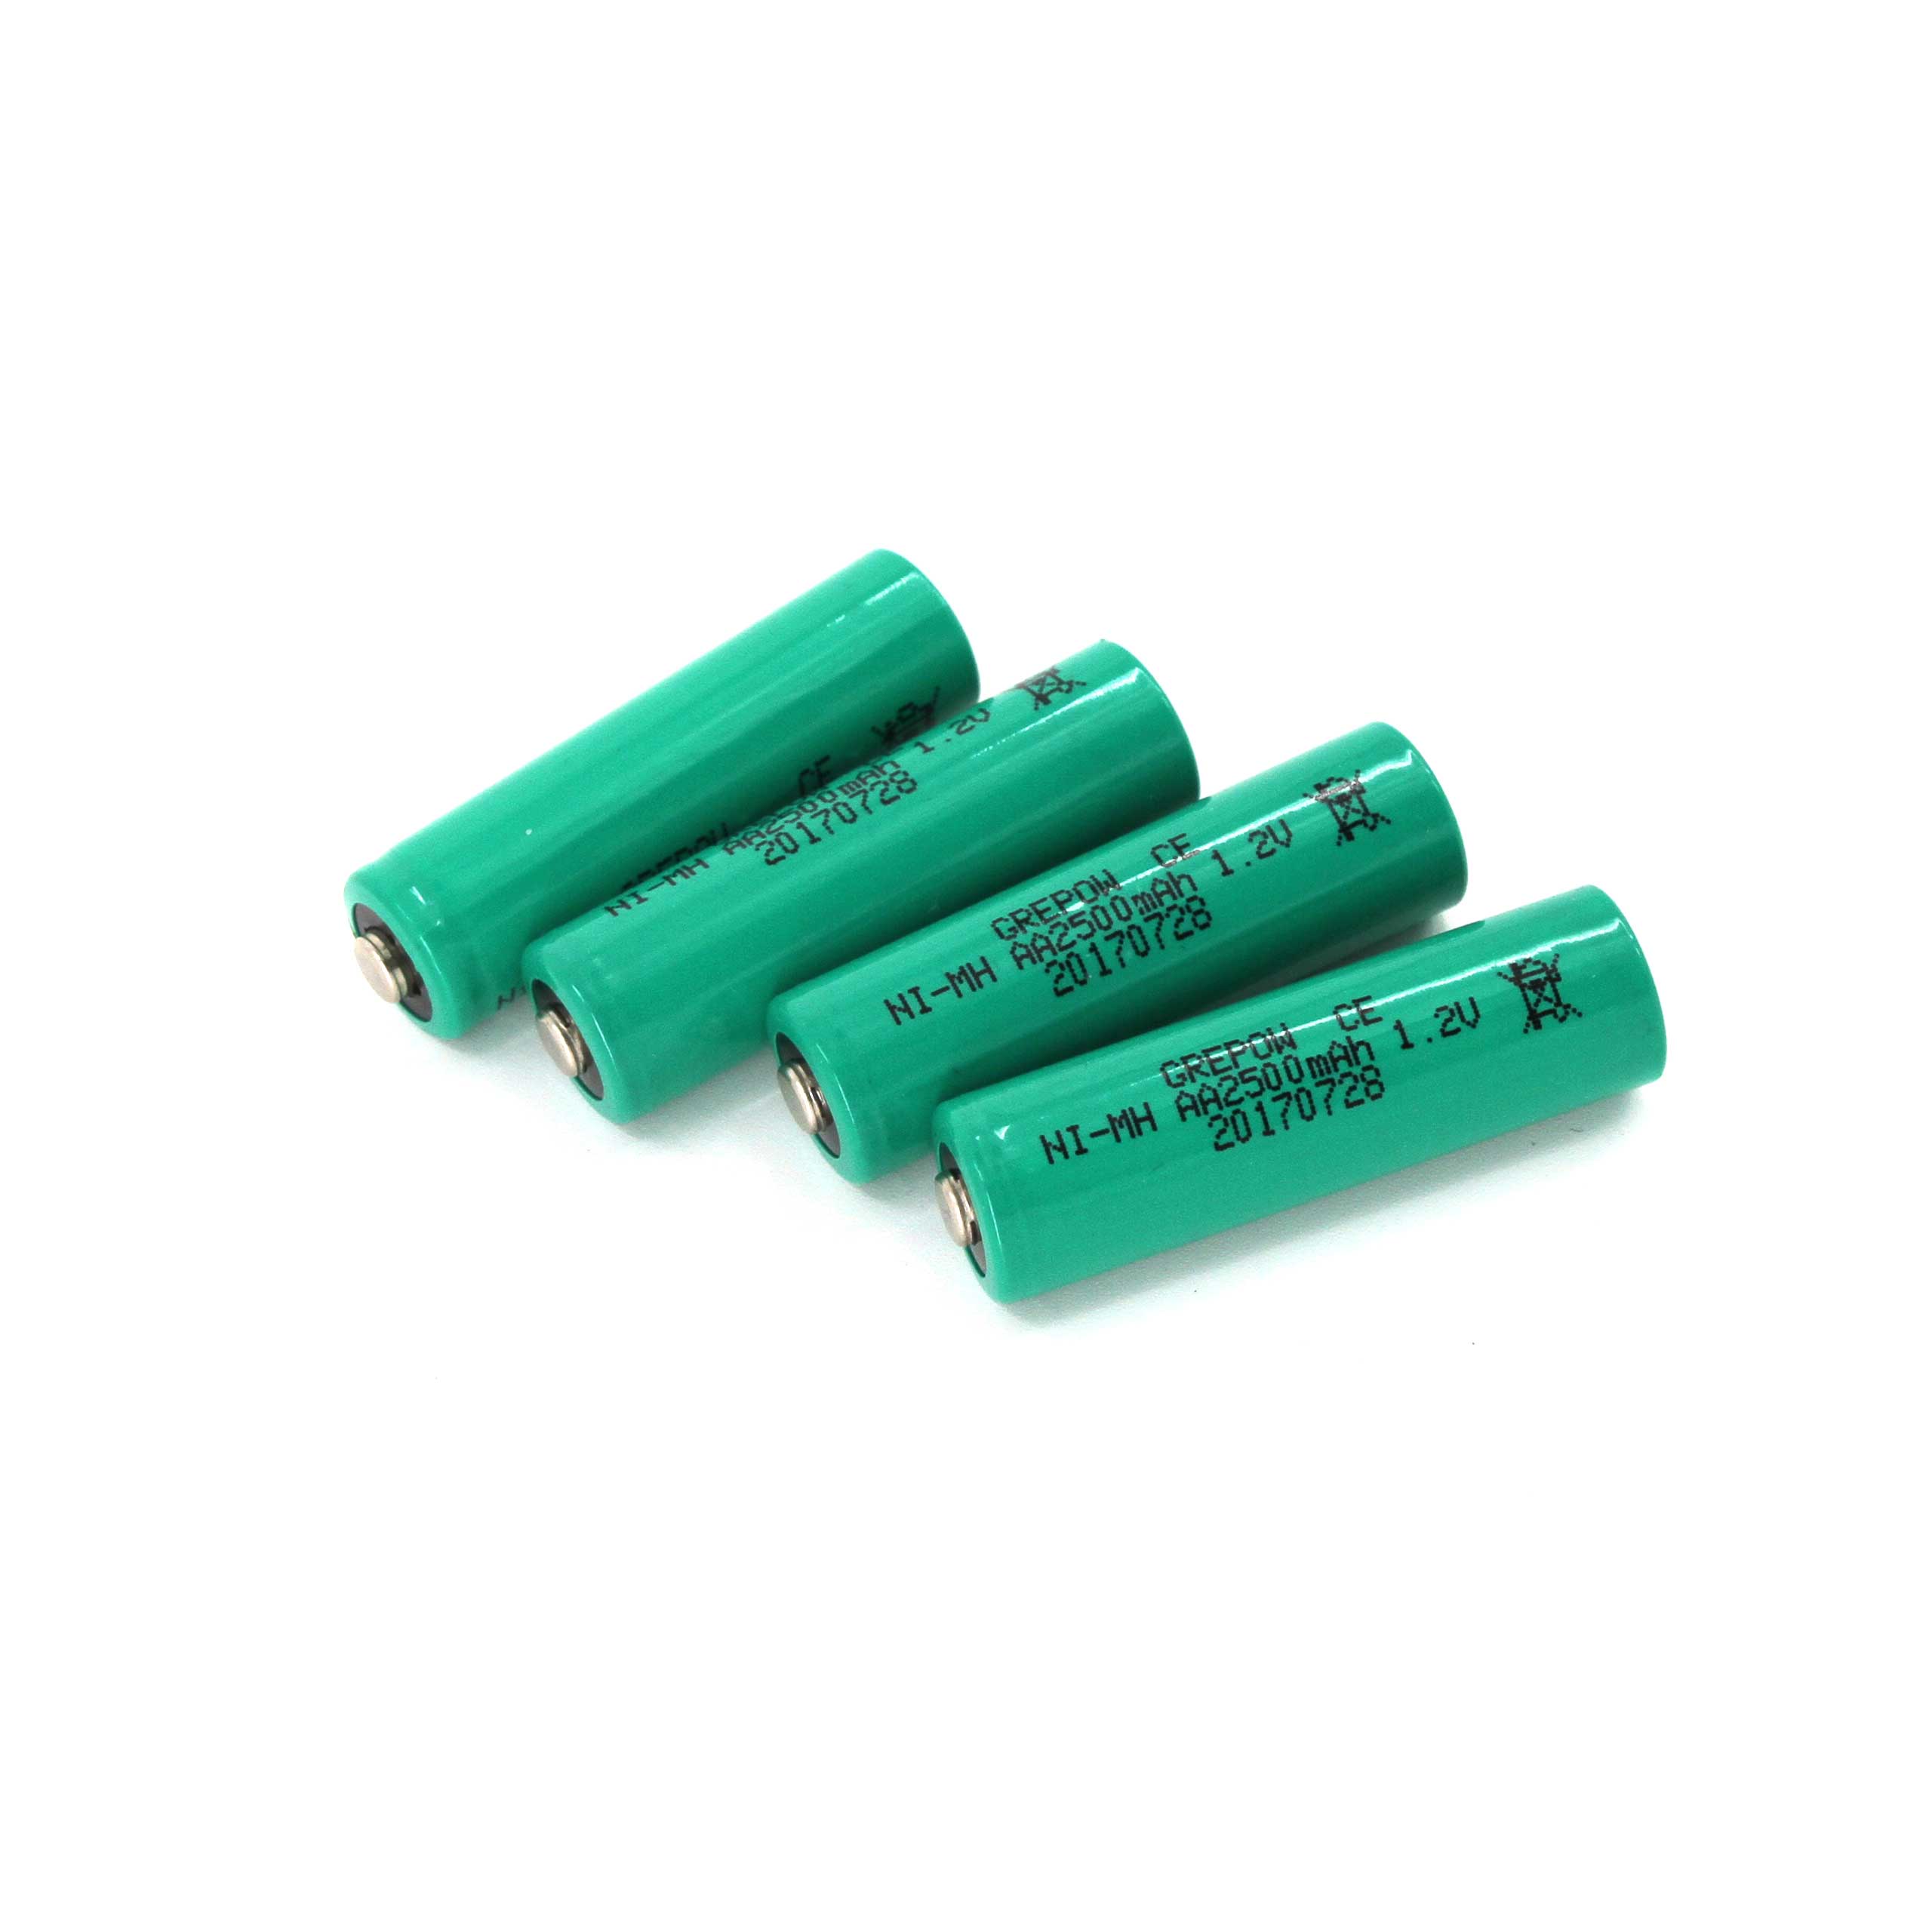 AA Batterys